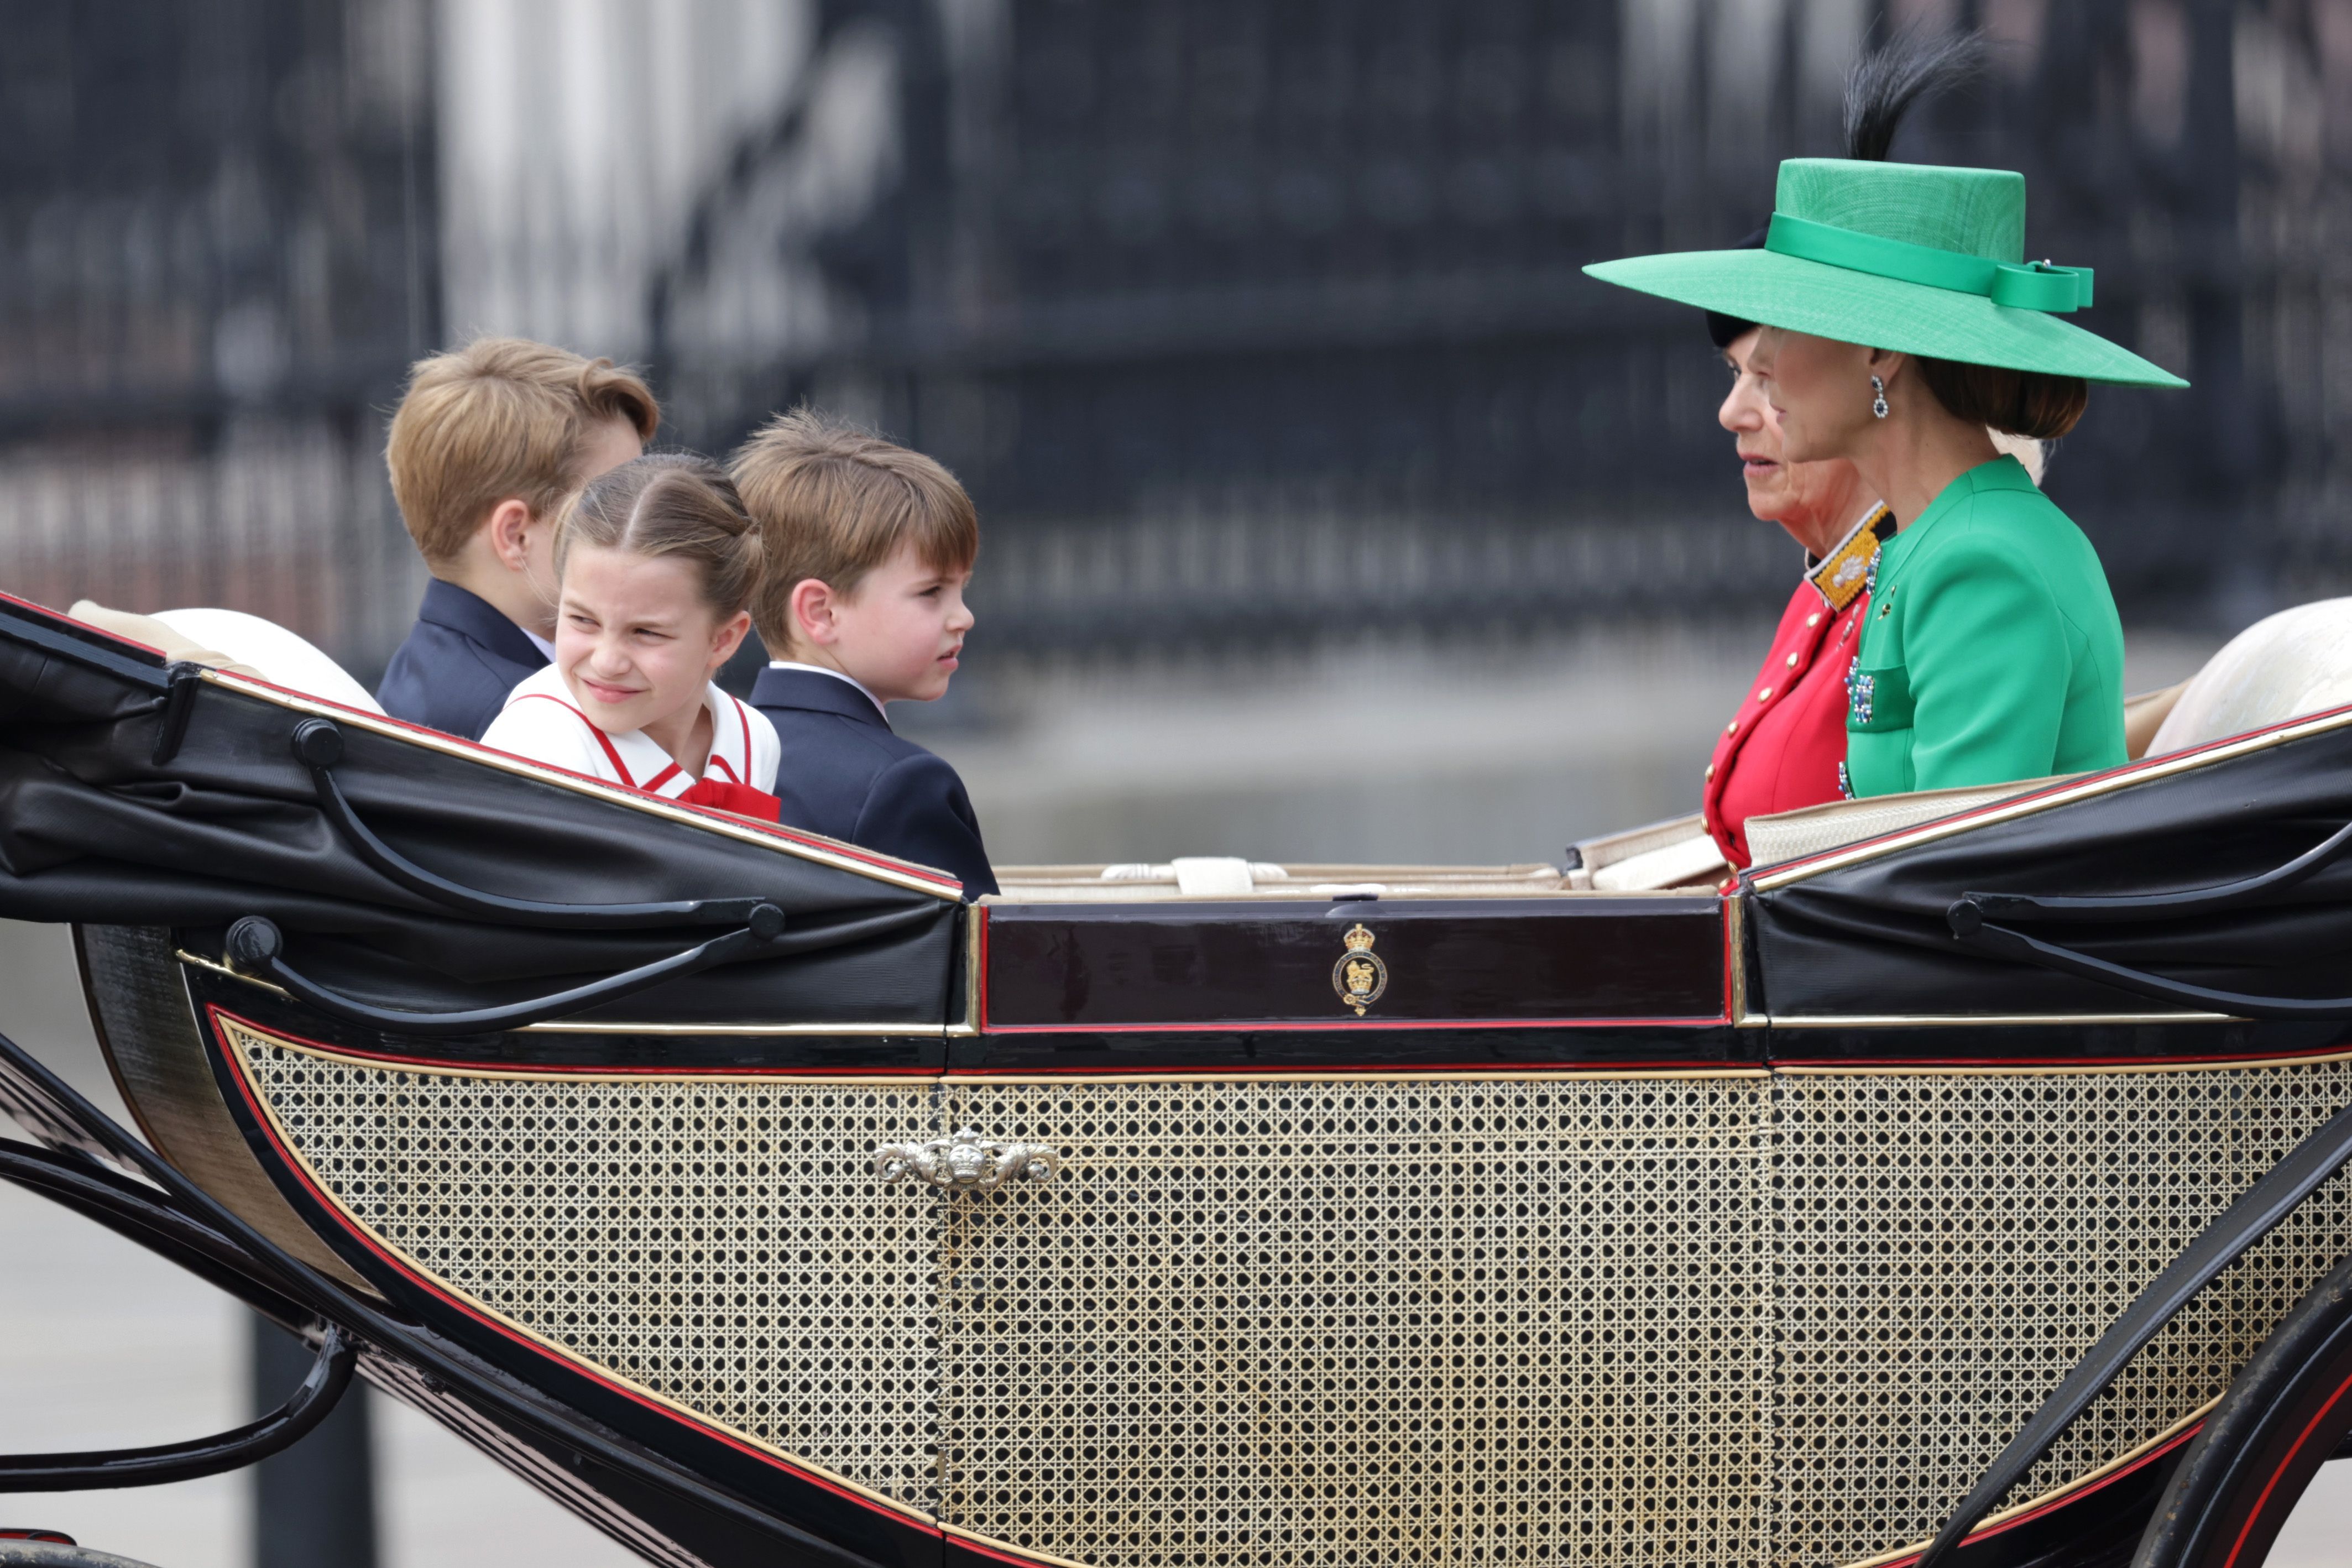 La princesa Charlotte mirando hacia atrás mientras viaja en un carruaje con sus hermanos, su madre (Kate Middleton) y su abuelastra (Camilla Parker Bowles)